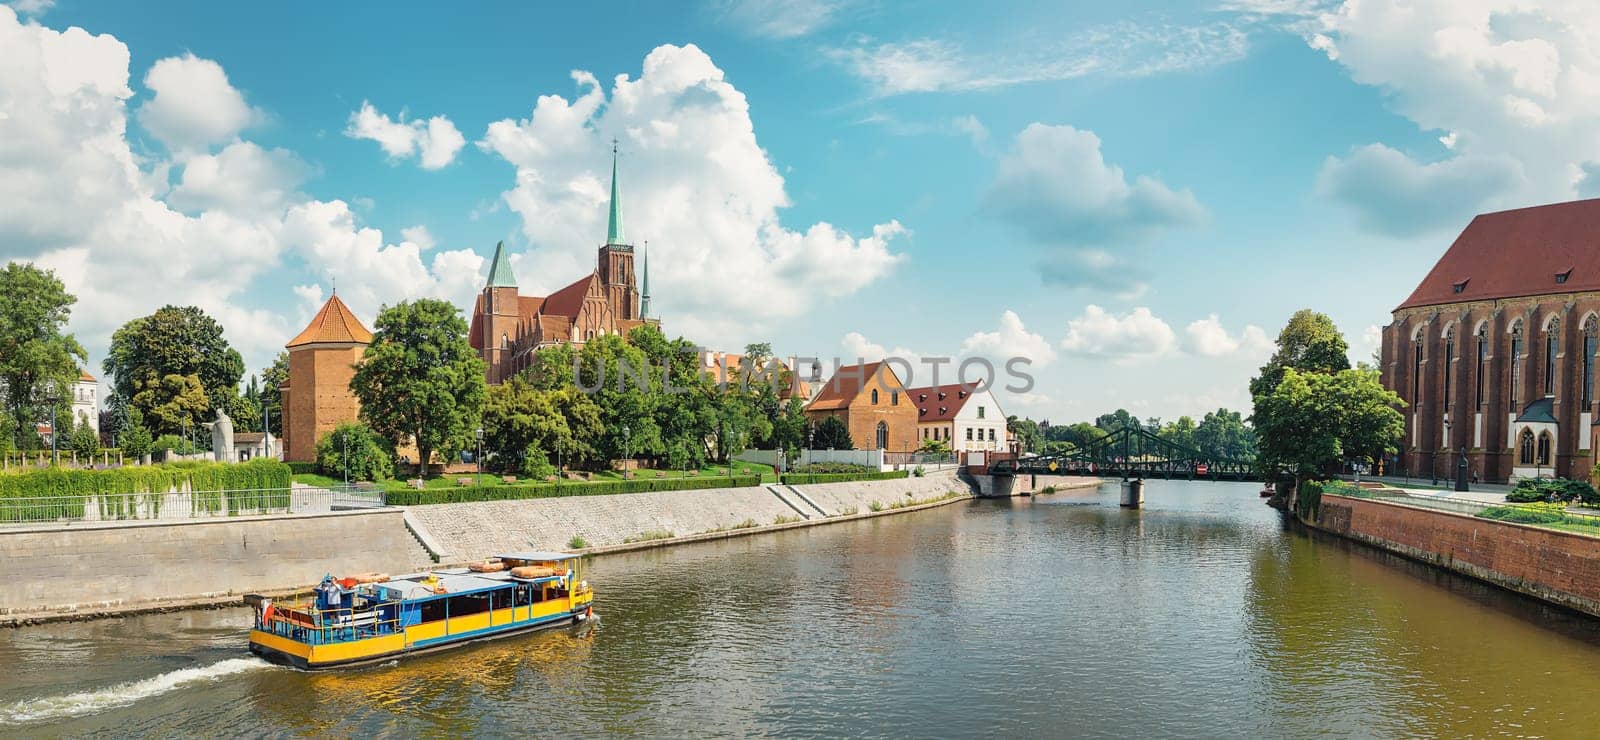 Tumski Bridge in Wroclaw by Givaga